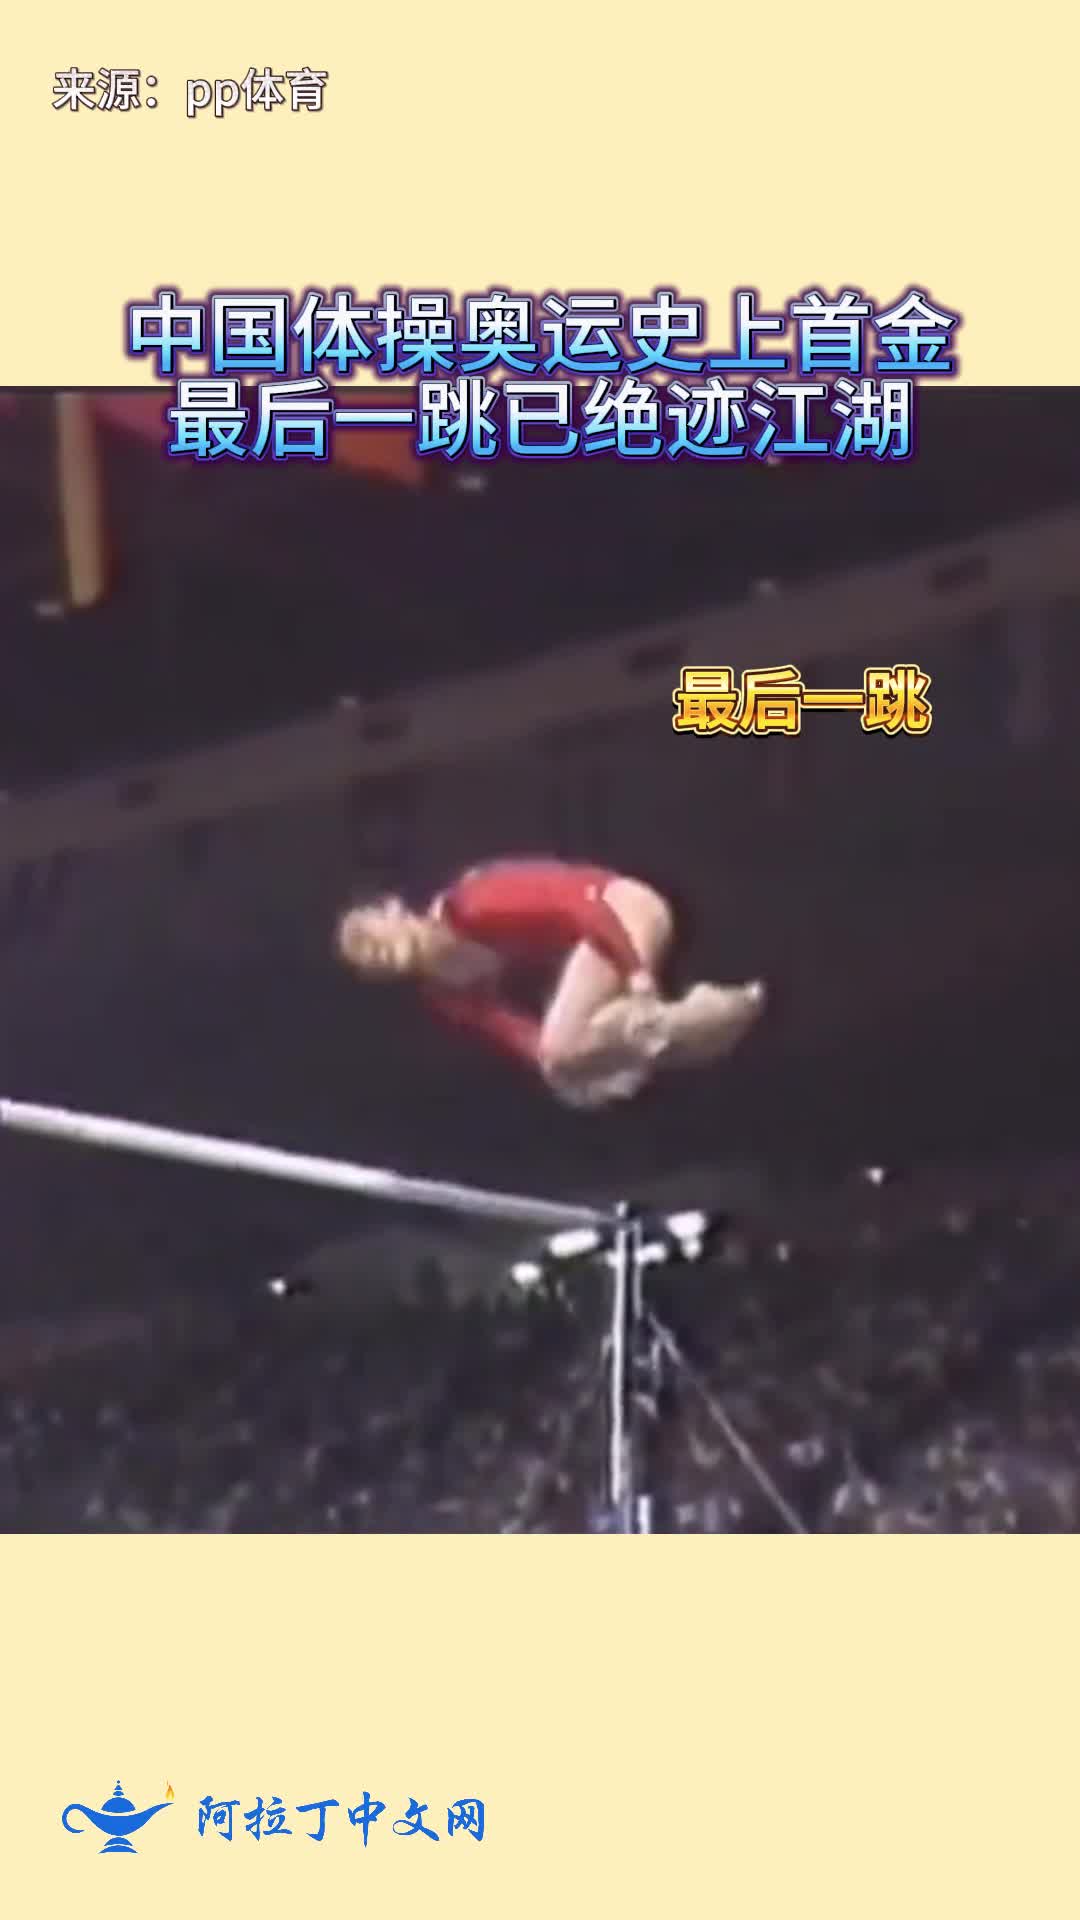 这是中国体操奥运上的第一枚金牌，最后一跳已绝迹！
#体操#马燕红#马燕红下#奥运会#首金